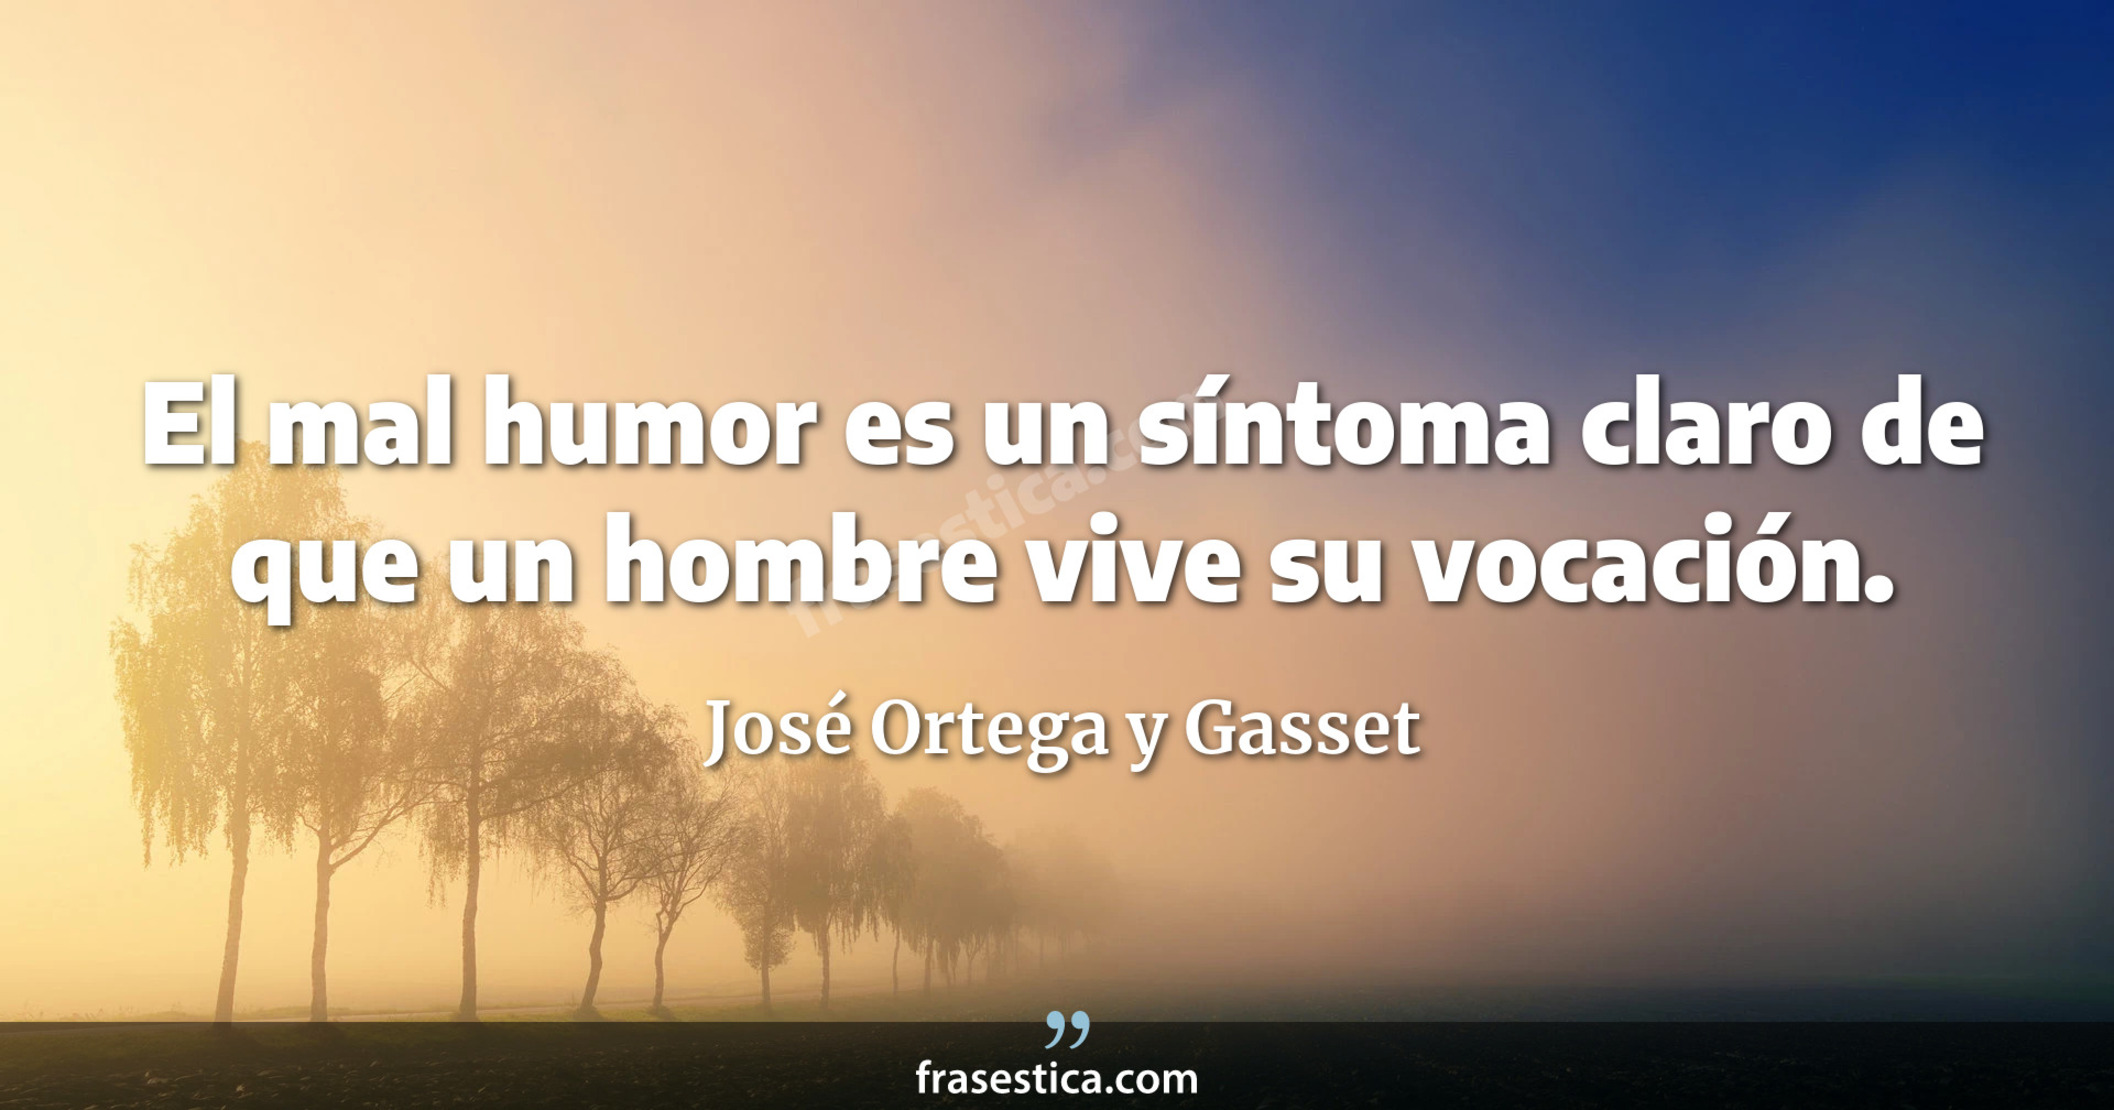 El mal humor es un síntoma claro de que un hombre vive su vocación. - José Ortega y Gasset